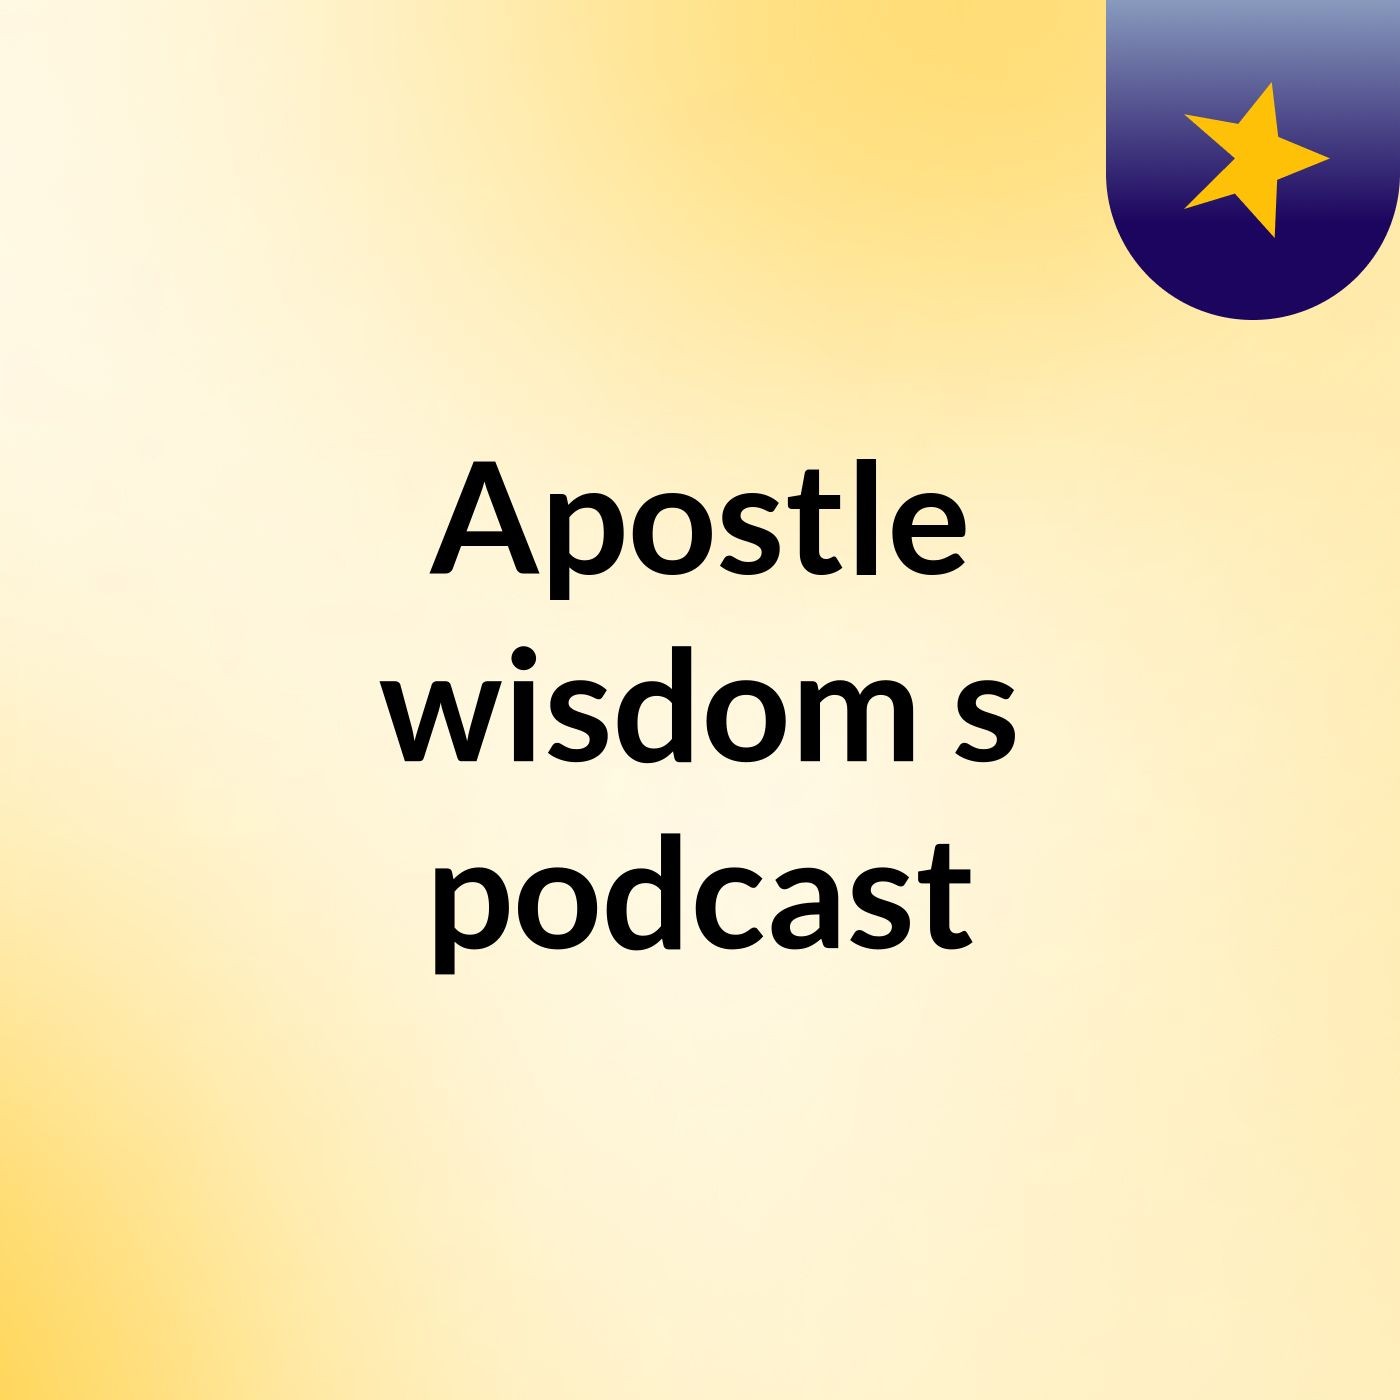 Episode 4 - Apostle wisdom's podcast